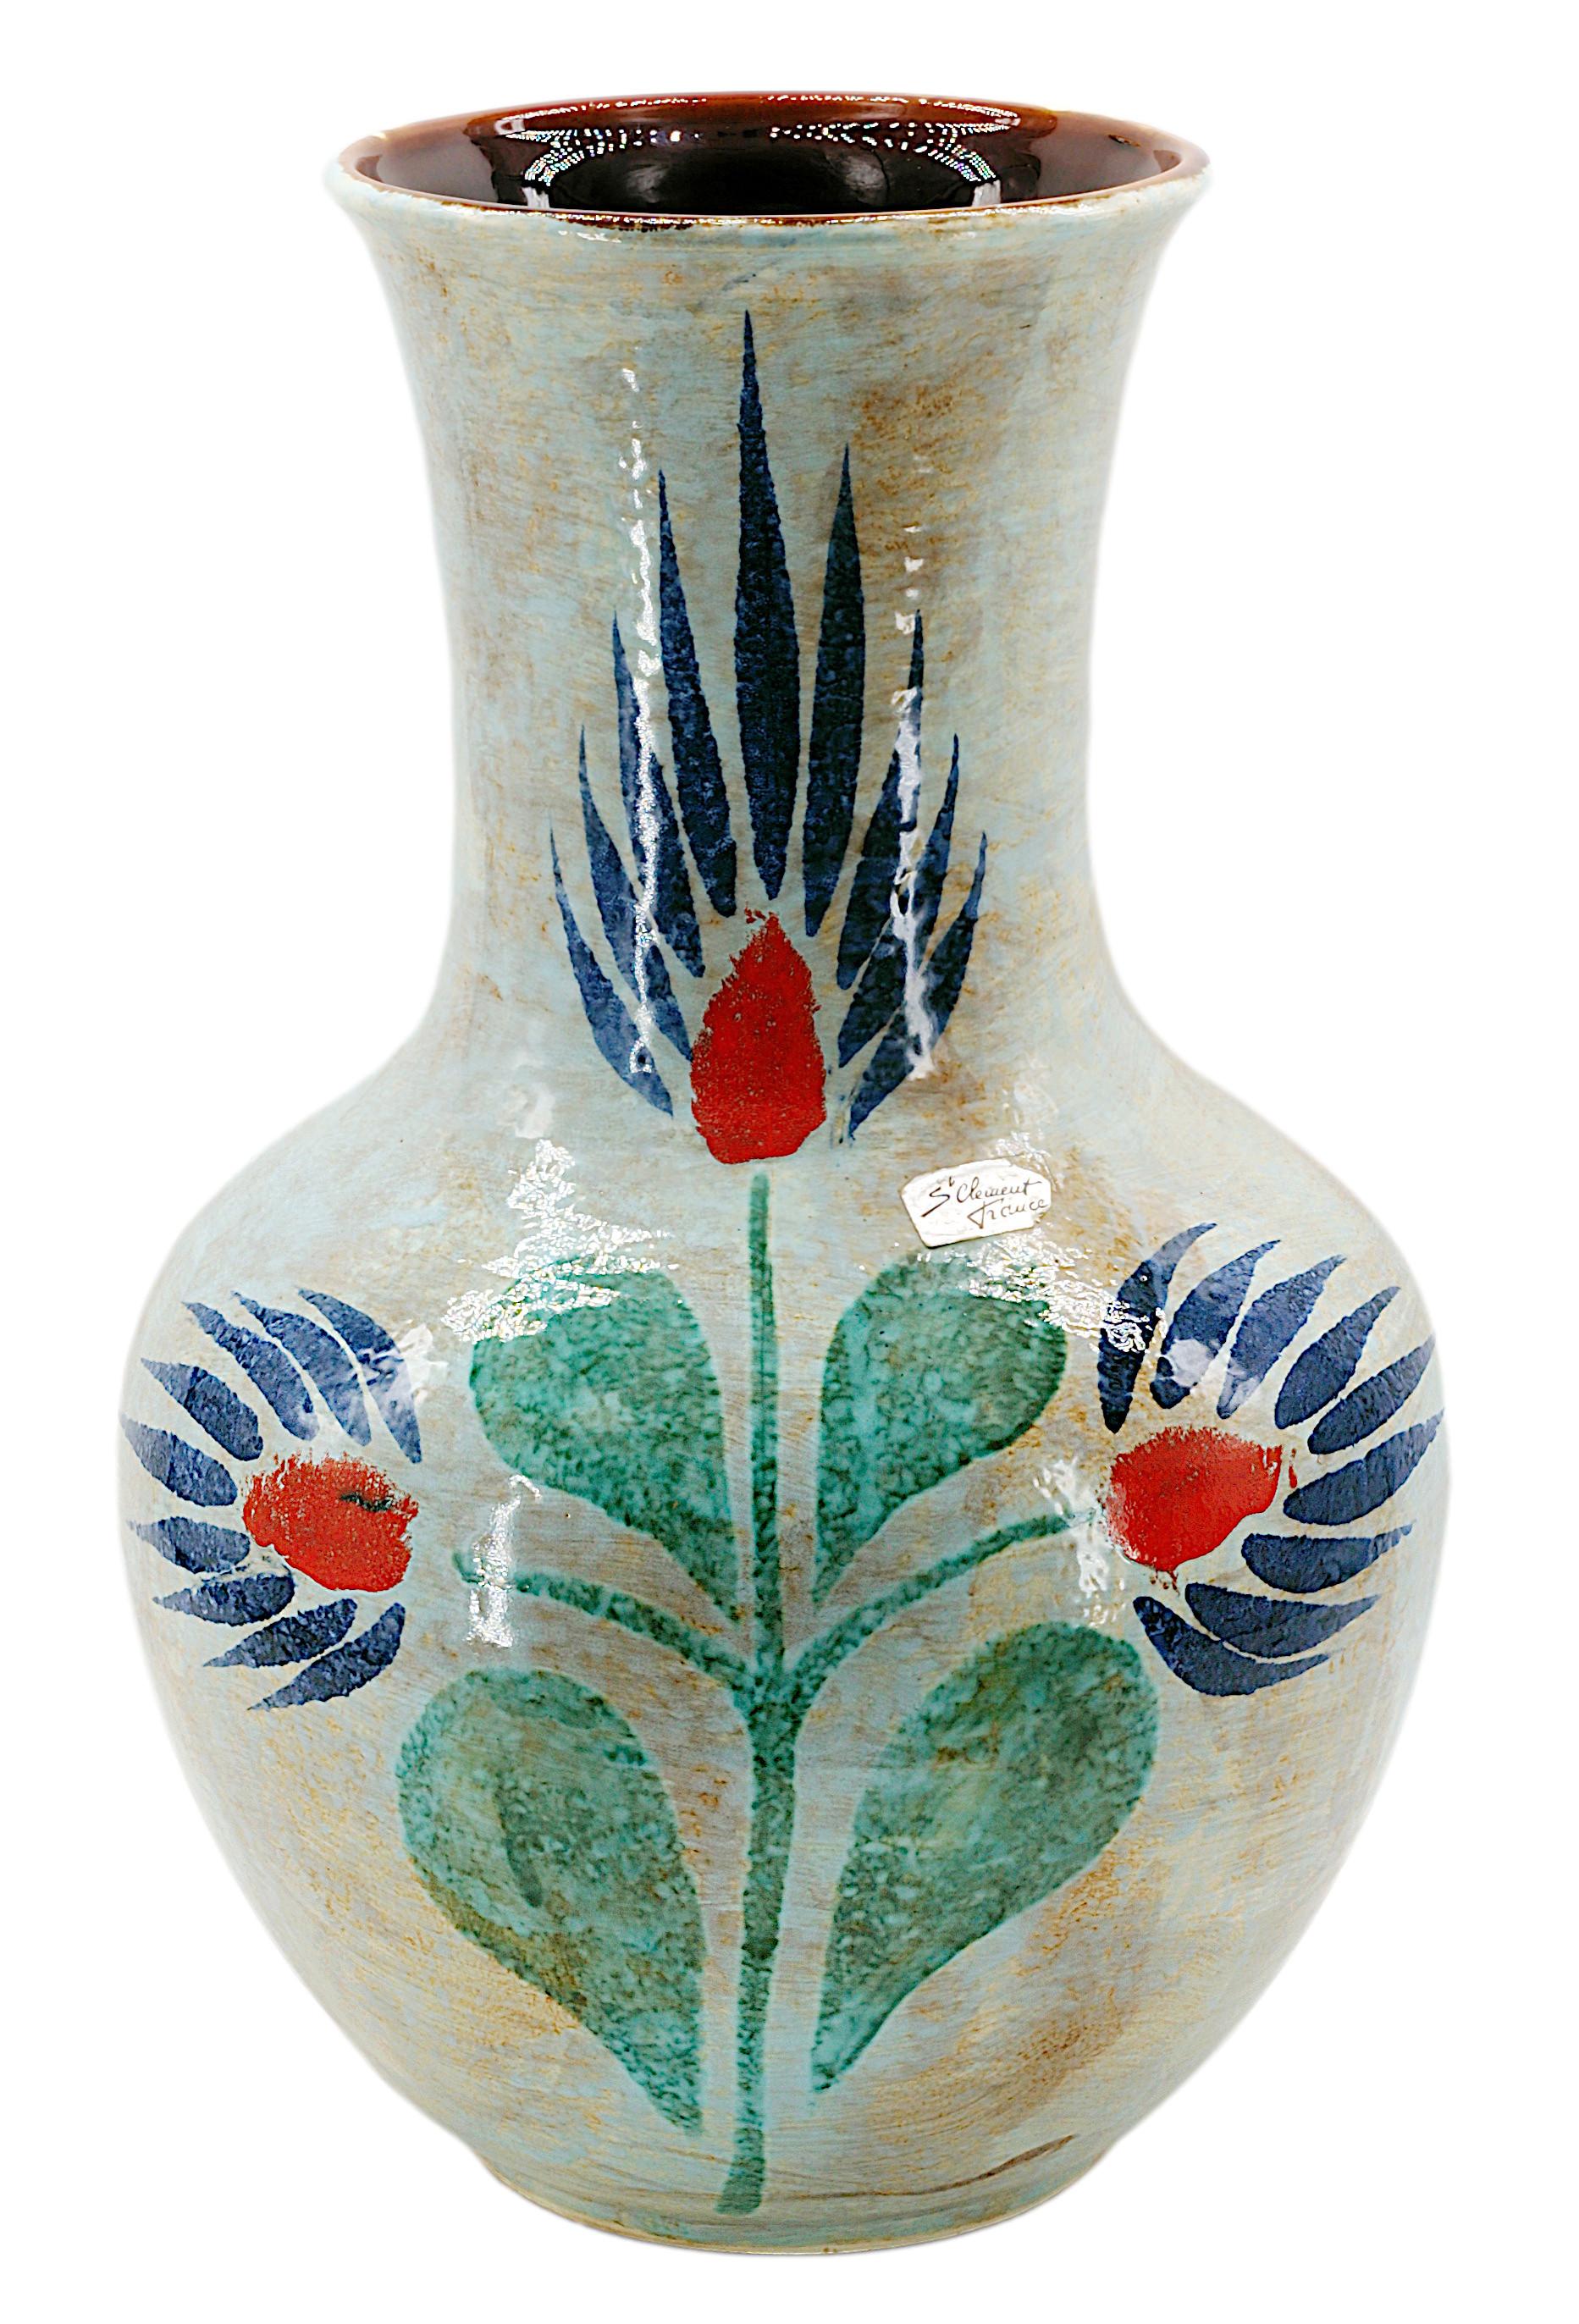 Énorme vase en grès de Saint-Clément, France, années 1950. Énorme, spectaculaire et très rare vase de cette taille présentant un motif floral stylisé peint et partiellement émaillé. Marron à l'intérieur. Hauteur : 20